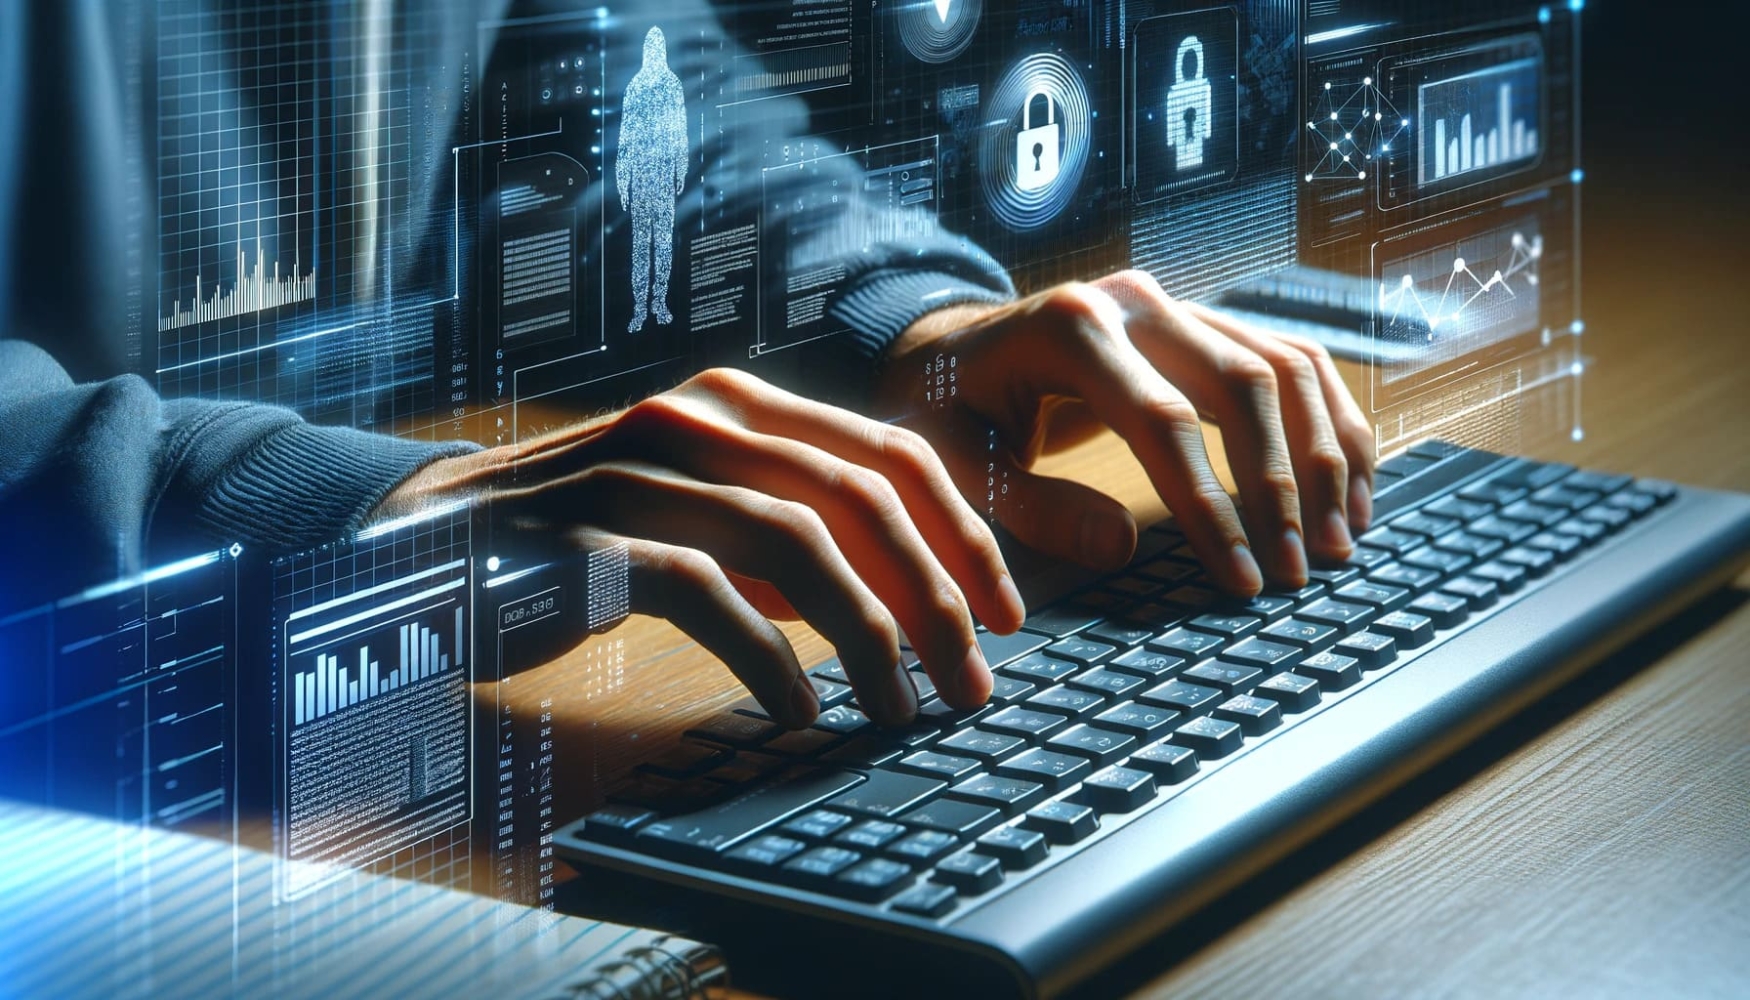 Computação gráfica de um homem digitando em um teclado, com um fundo futurista atrás dele e uma imagem digital de uma mão no teclado